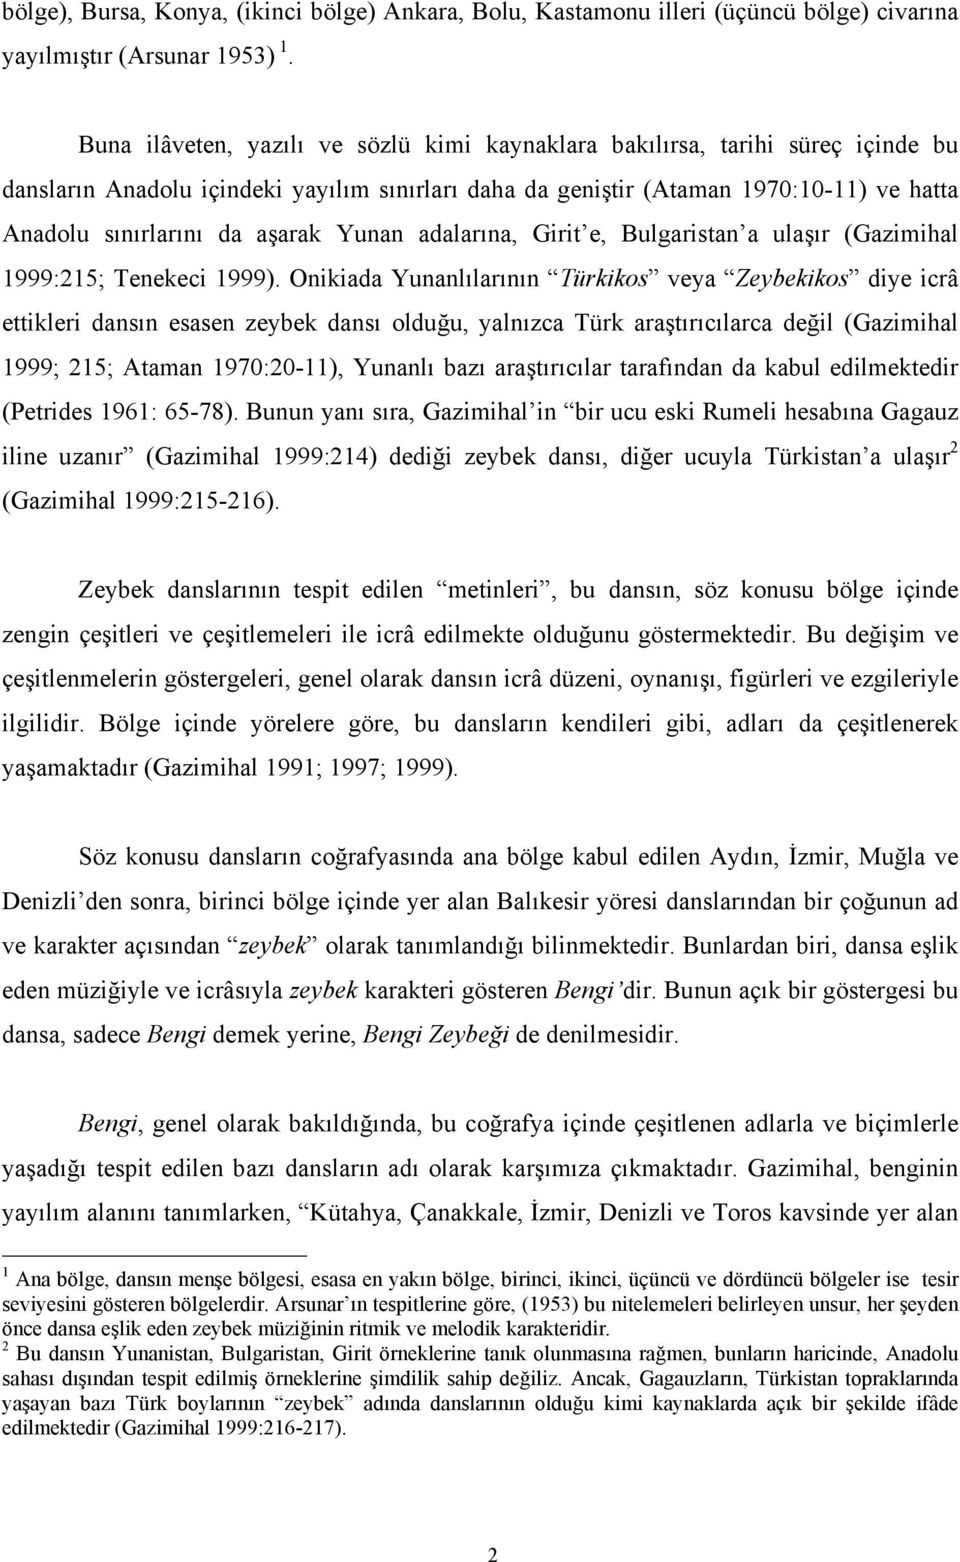 aşarak Yunan adalarına, Girit e, Bulgaristan a ulaşır (Gazimihal 1999:215; Tenekeci 1999).